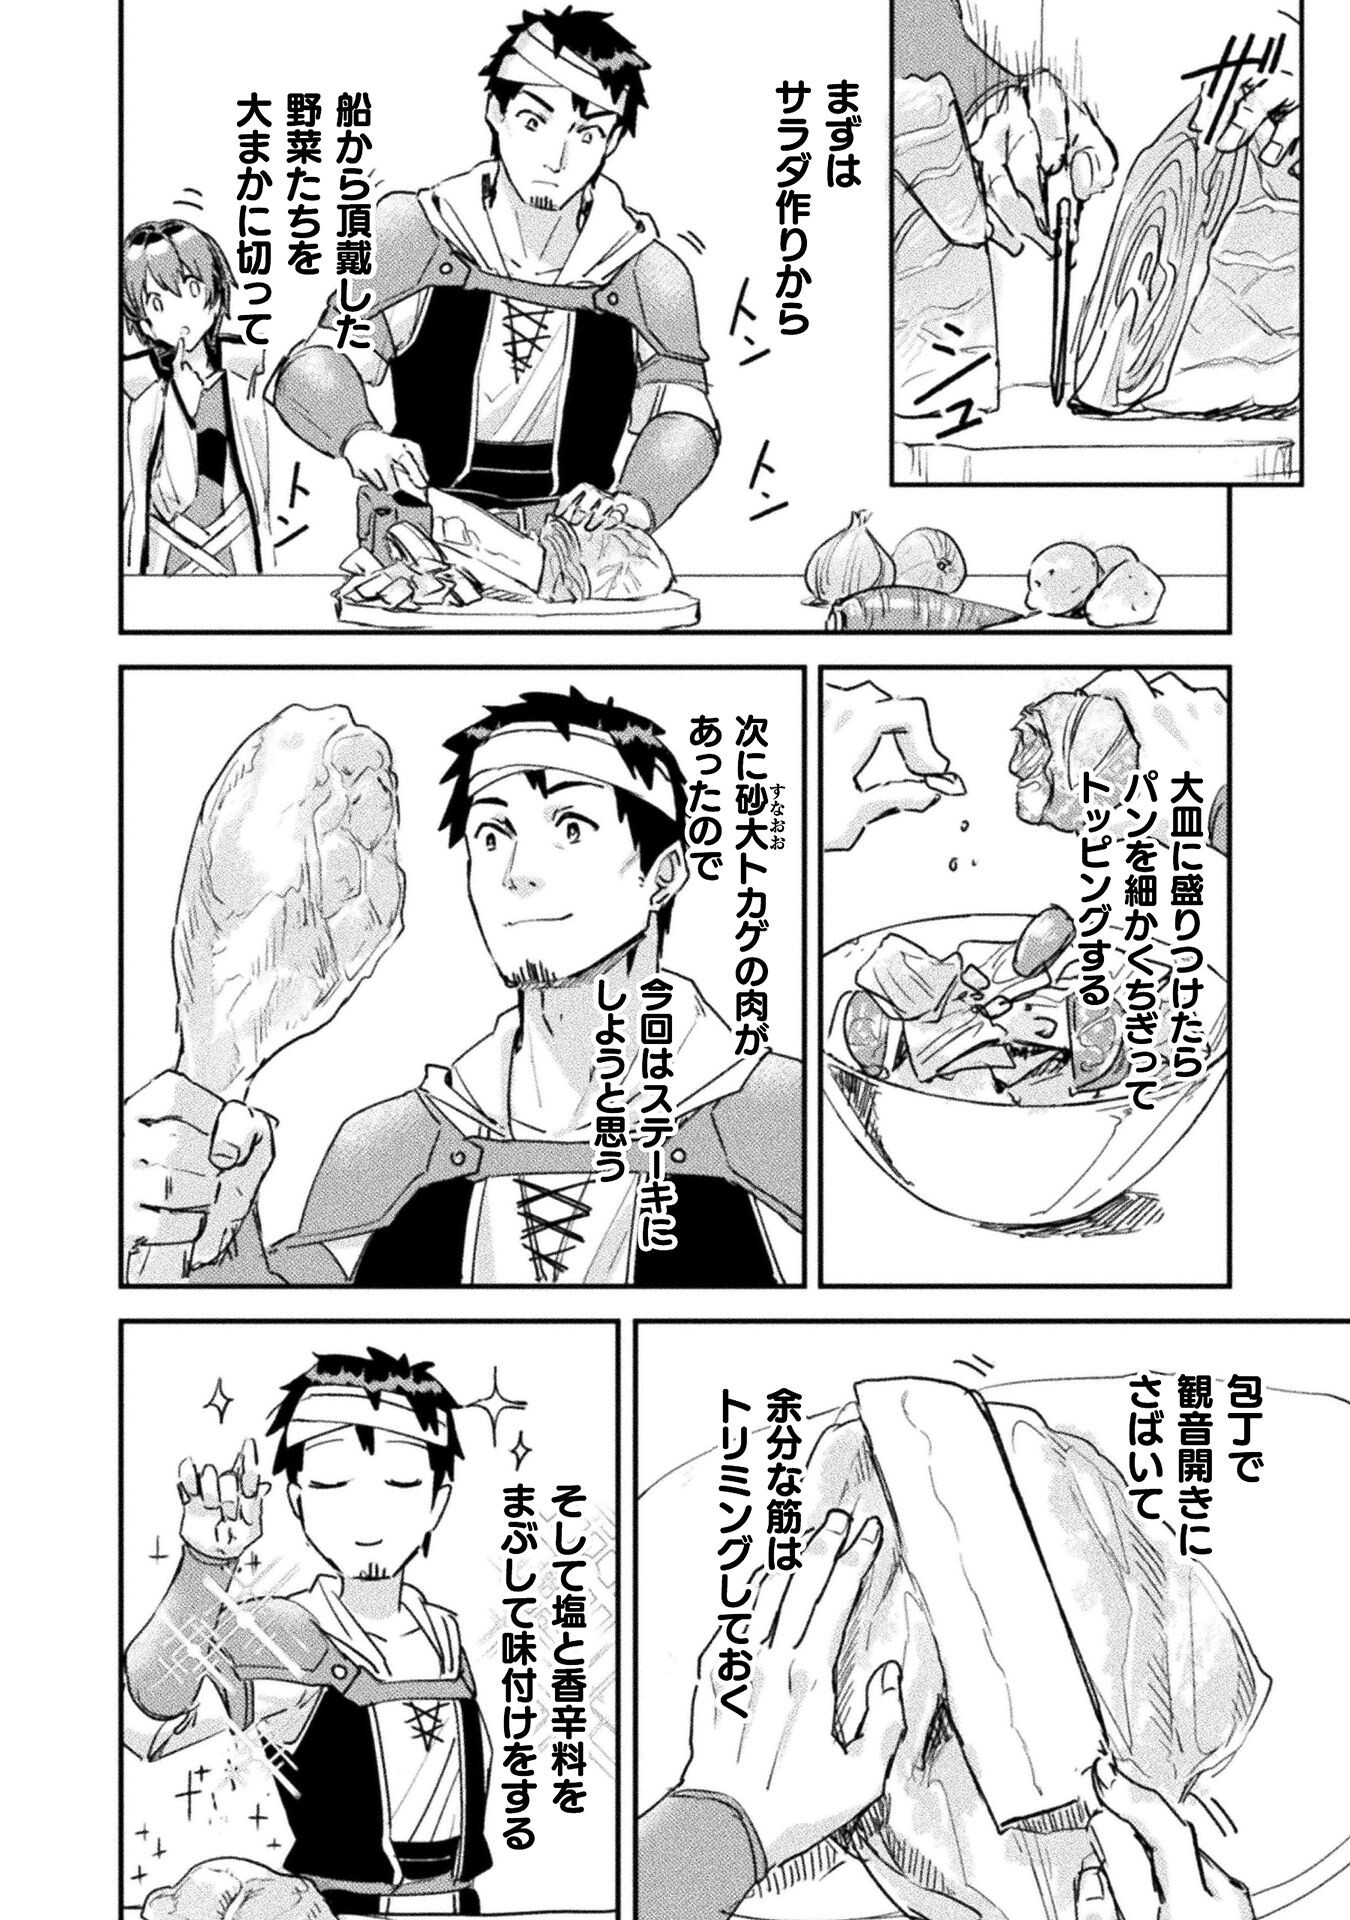 Sabaku Darake no Sekai de, Ossan ga Denshi Money de Musou Suru - Chapter 7 - Page 6